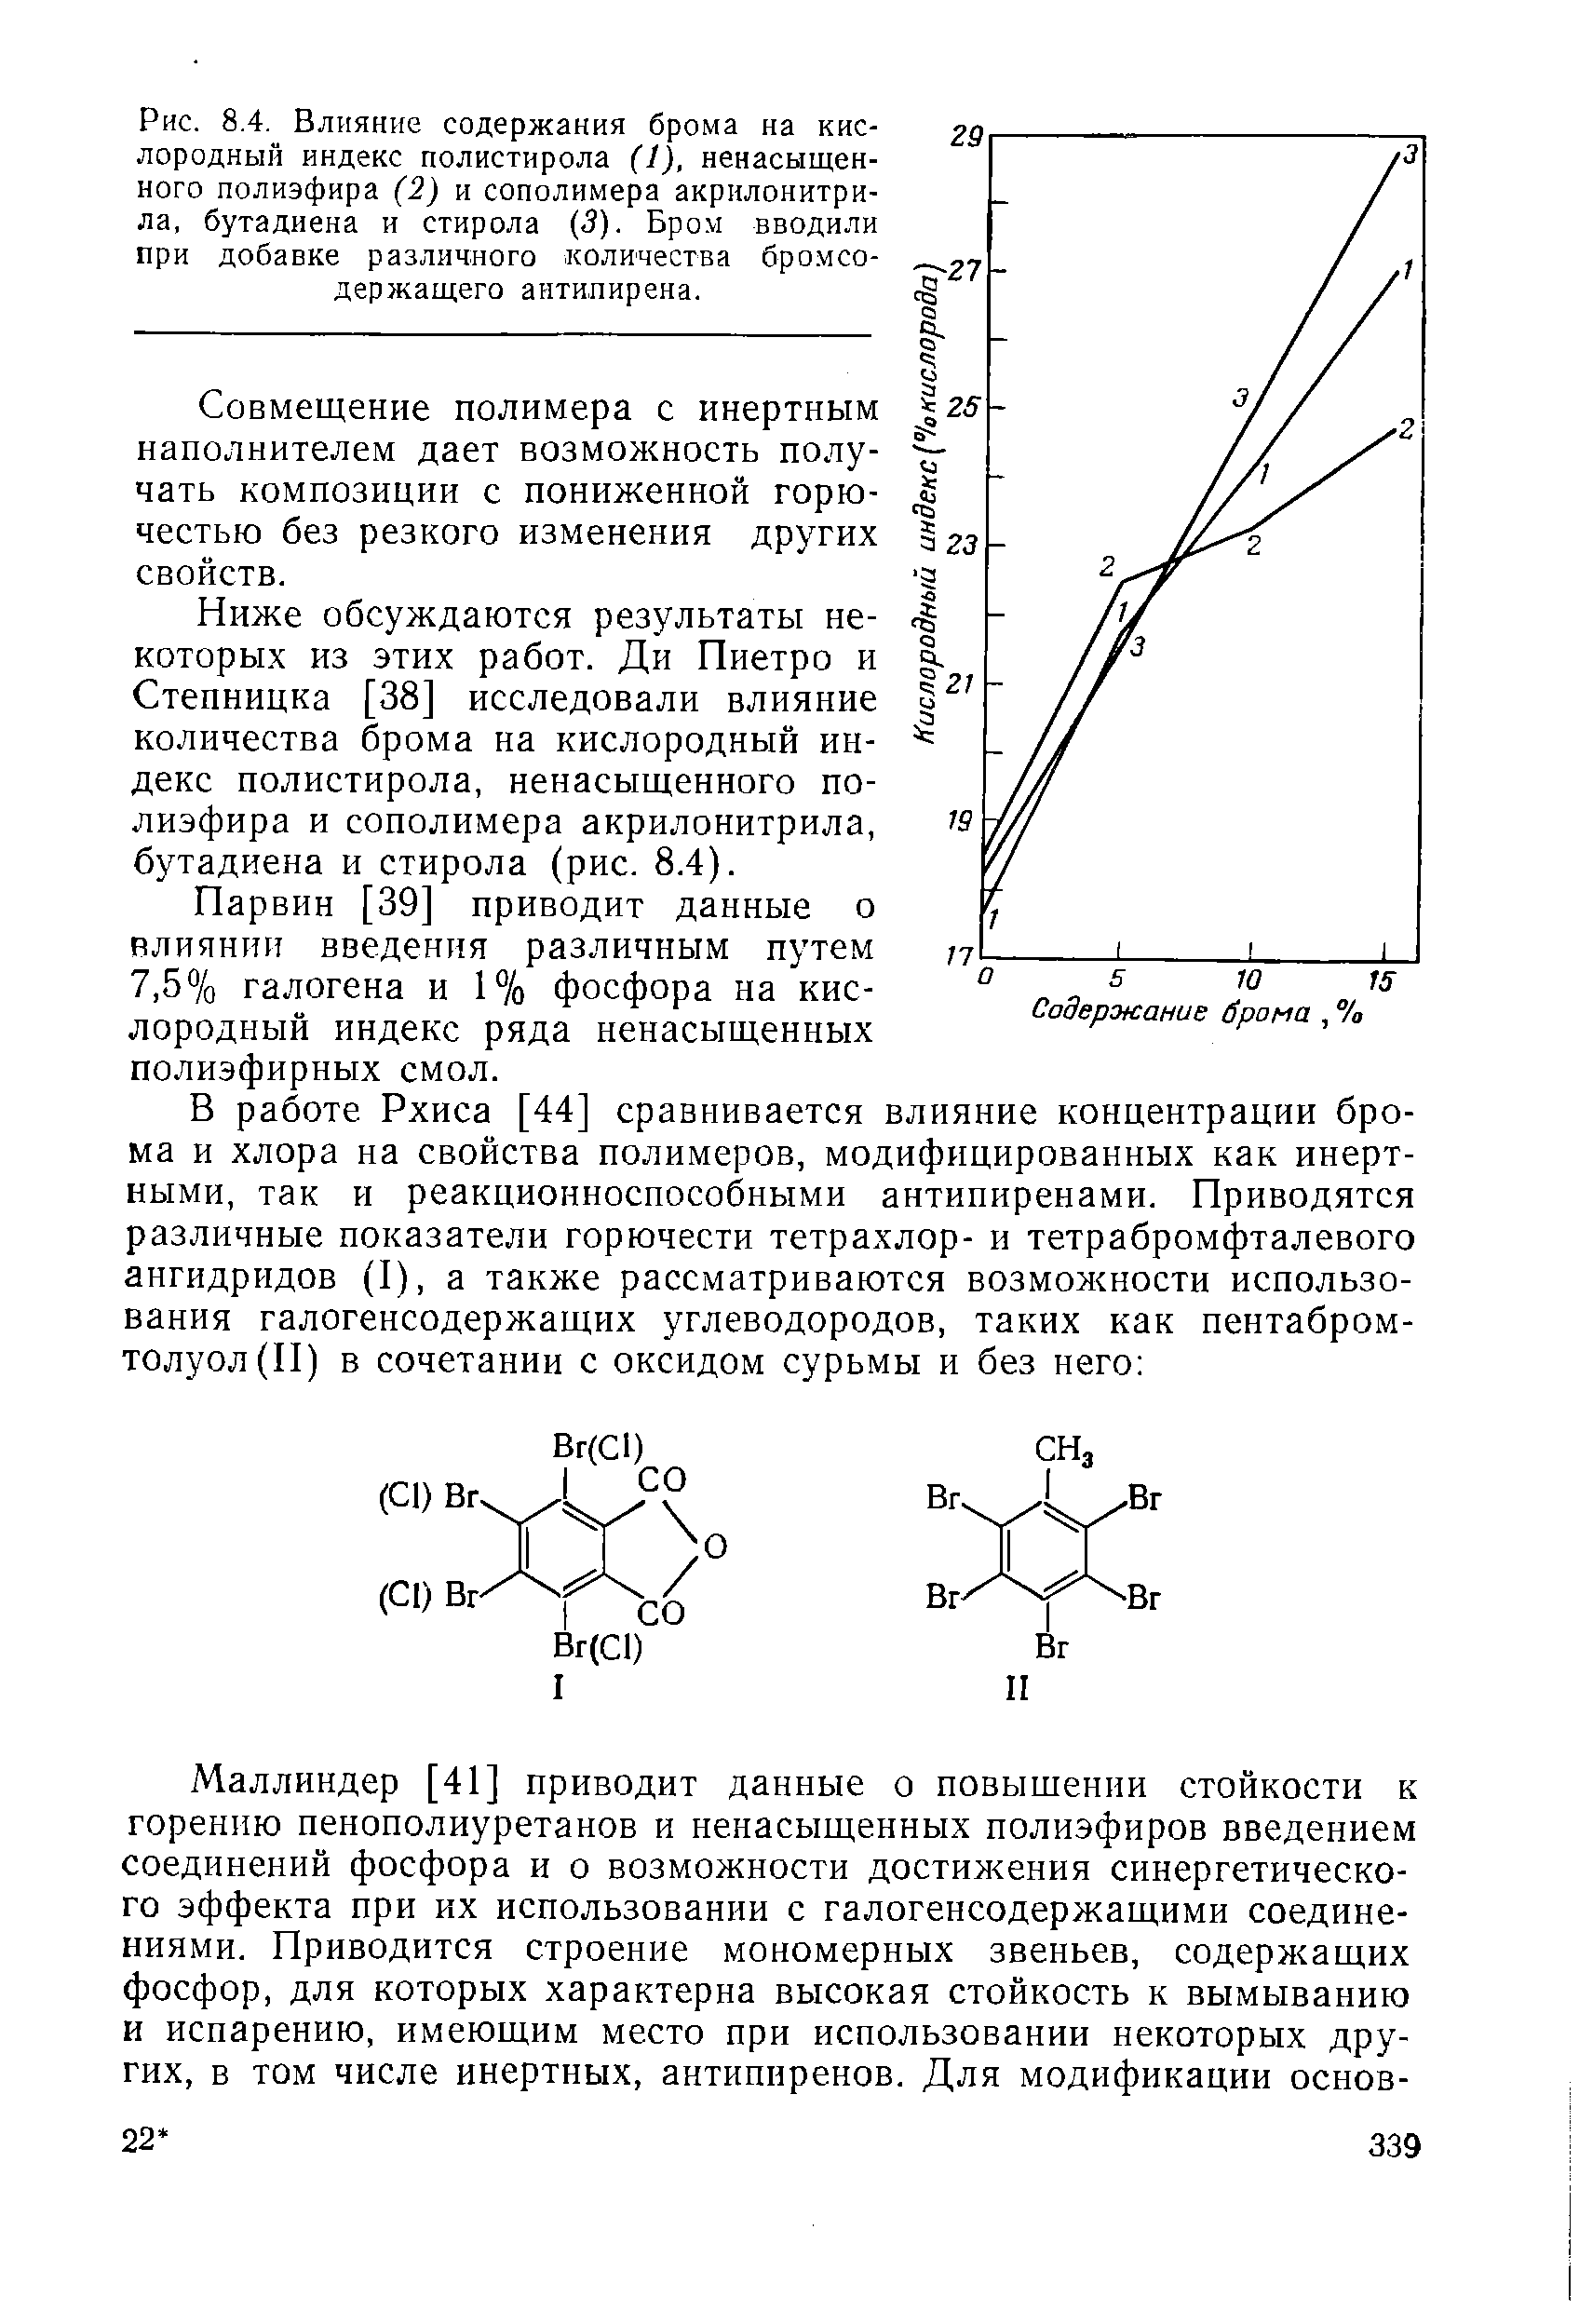 Рис. 8.4. Влияние содержания брома на кислородный индекс полистирола (1), <a href="/info/190656">ненасыщенного полиэфира</a> (2) и сополимера акрилонитри-ла, бутадиена и стирола (3). Бром вводили при добавке различного количества бромсодержащего антипирена.
